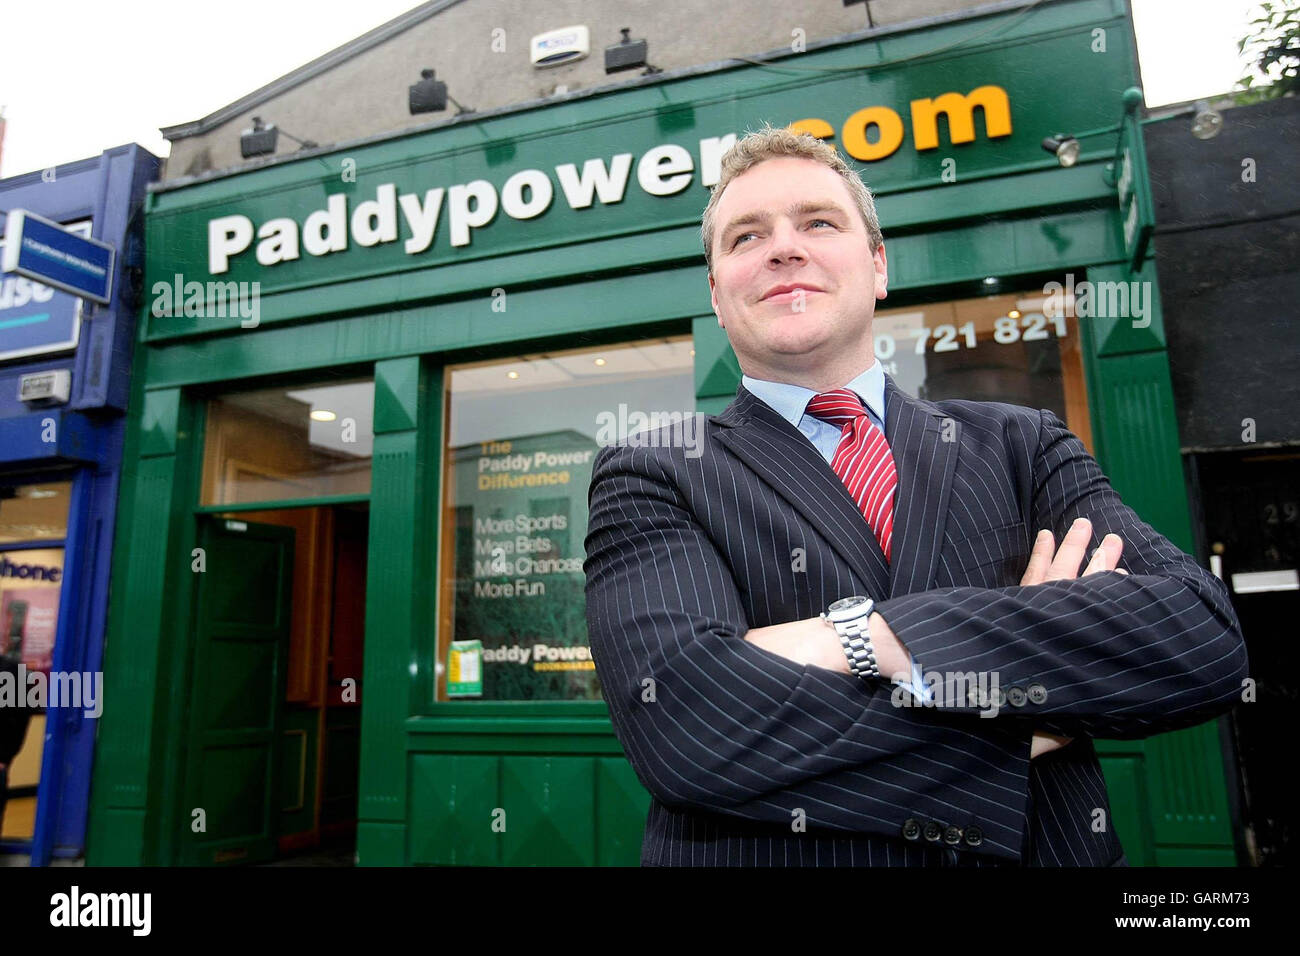 Paddy Power. Paddy Power Casino. Paddy power paddy power fun